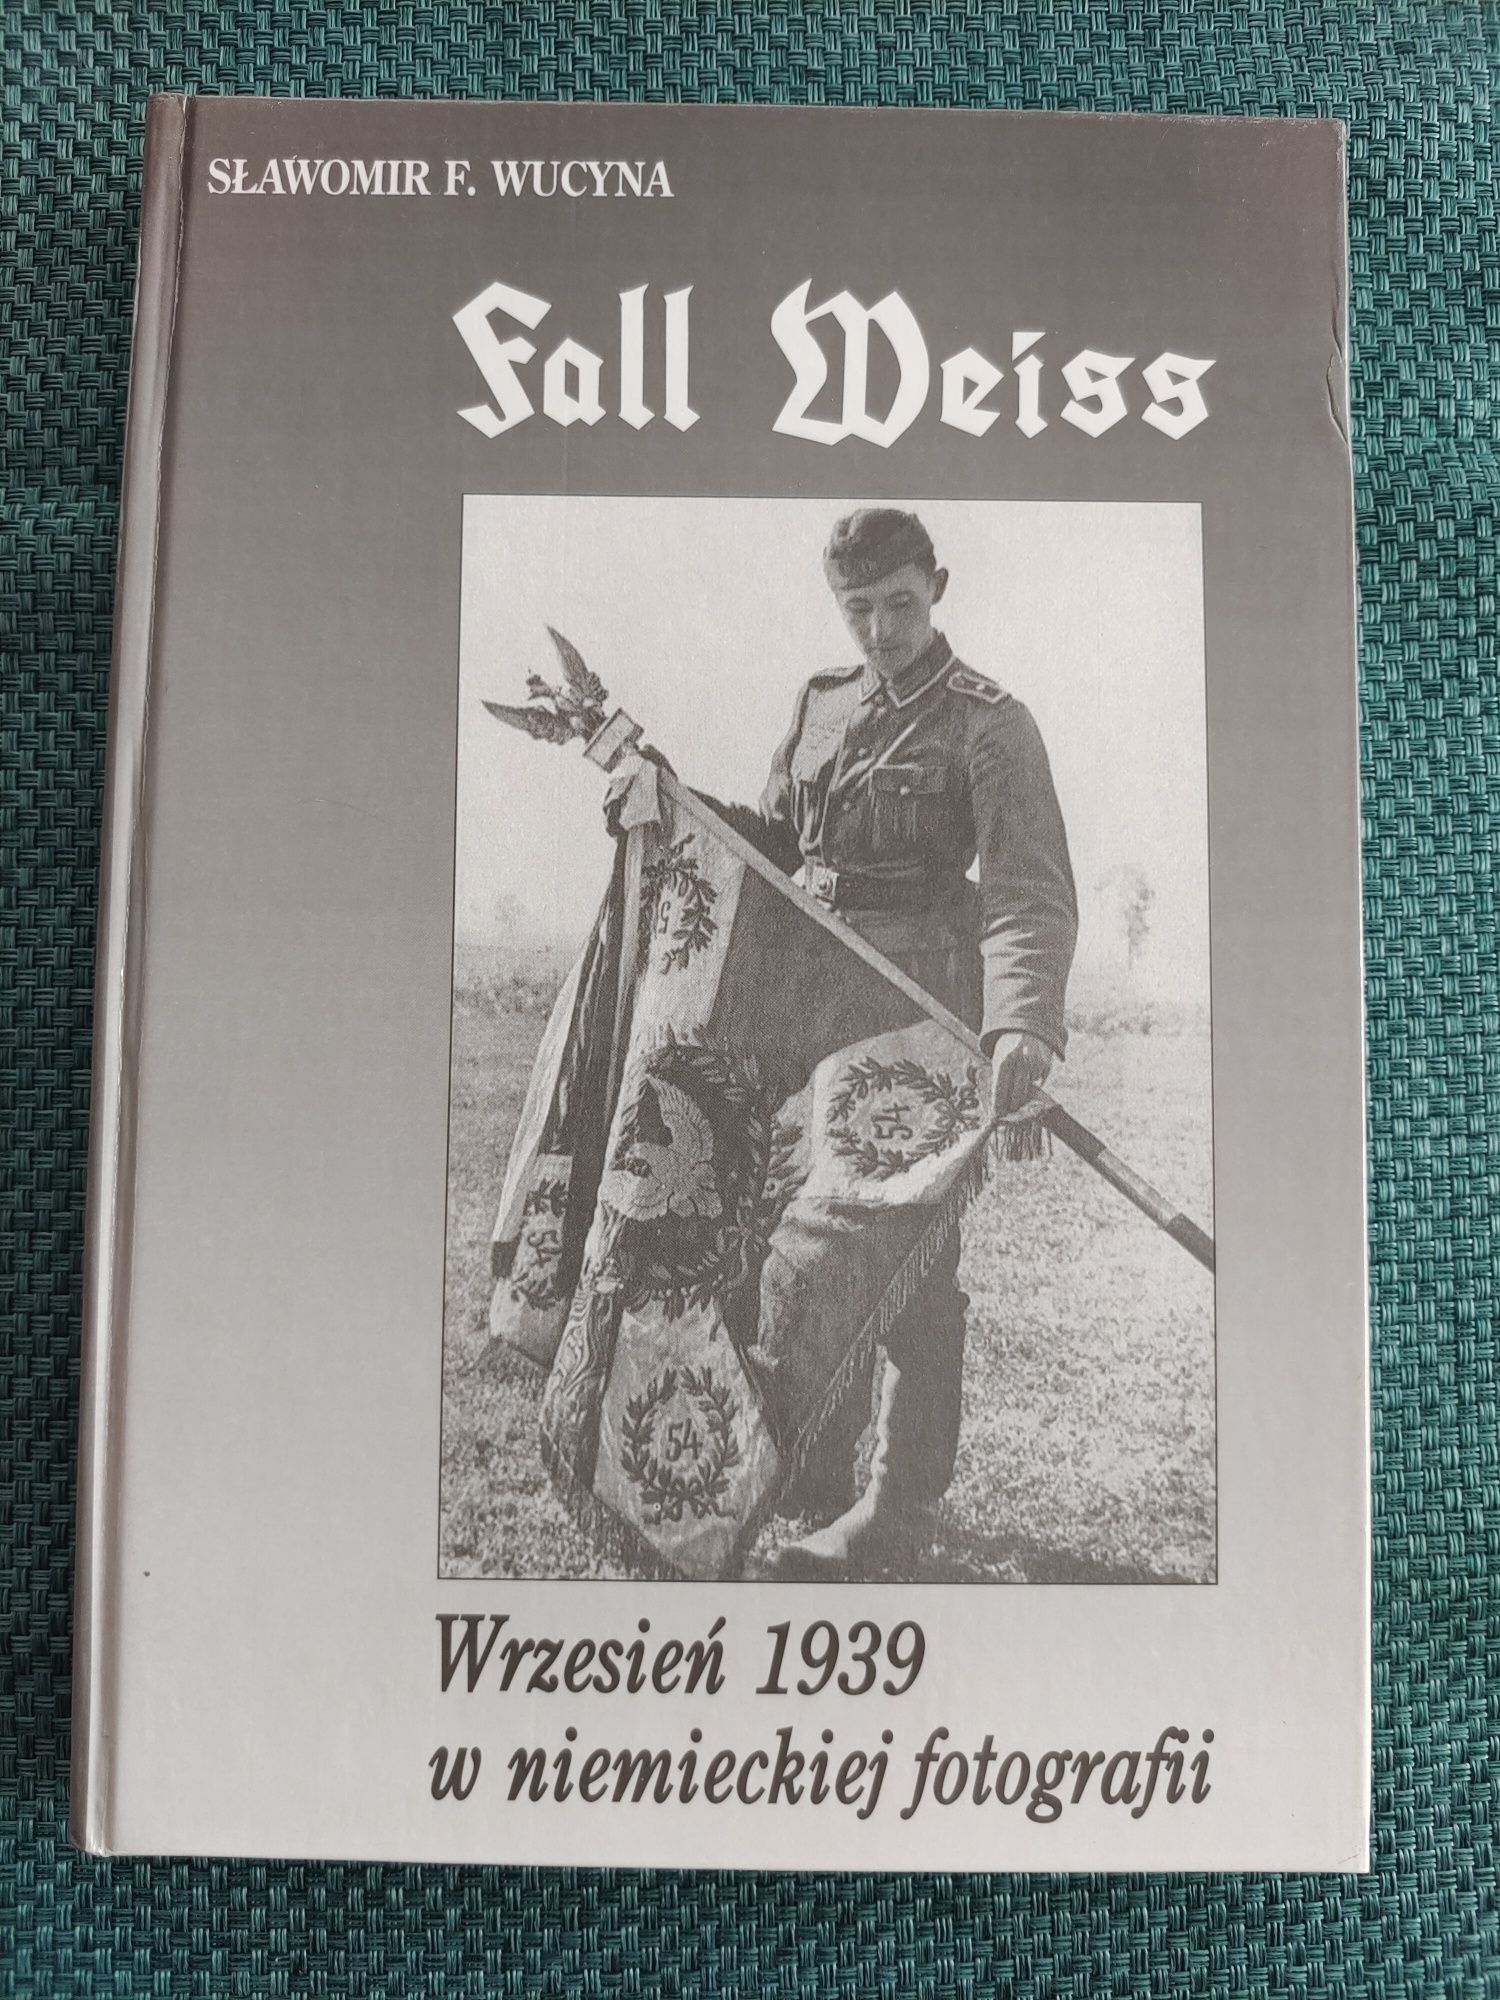 Fall Weiss - Wrzesień 1939 w niemieckiej fotografi